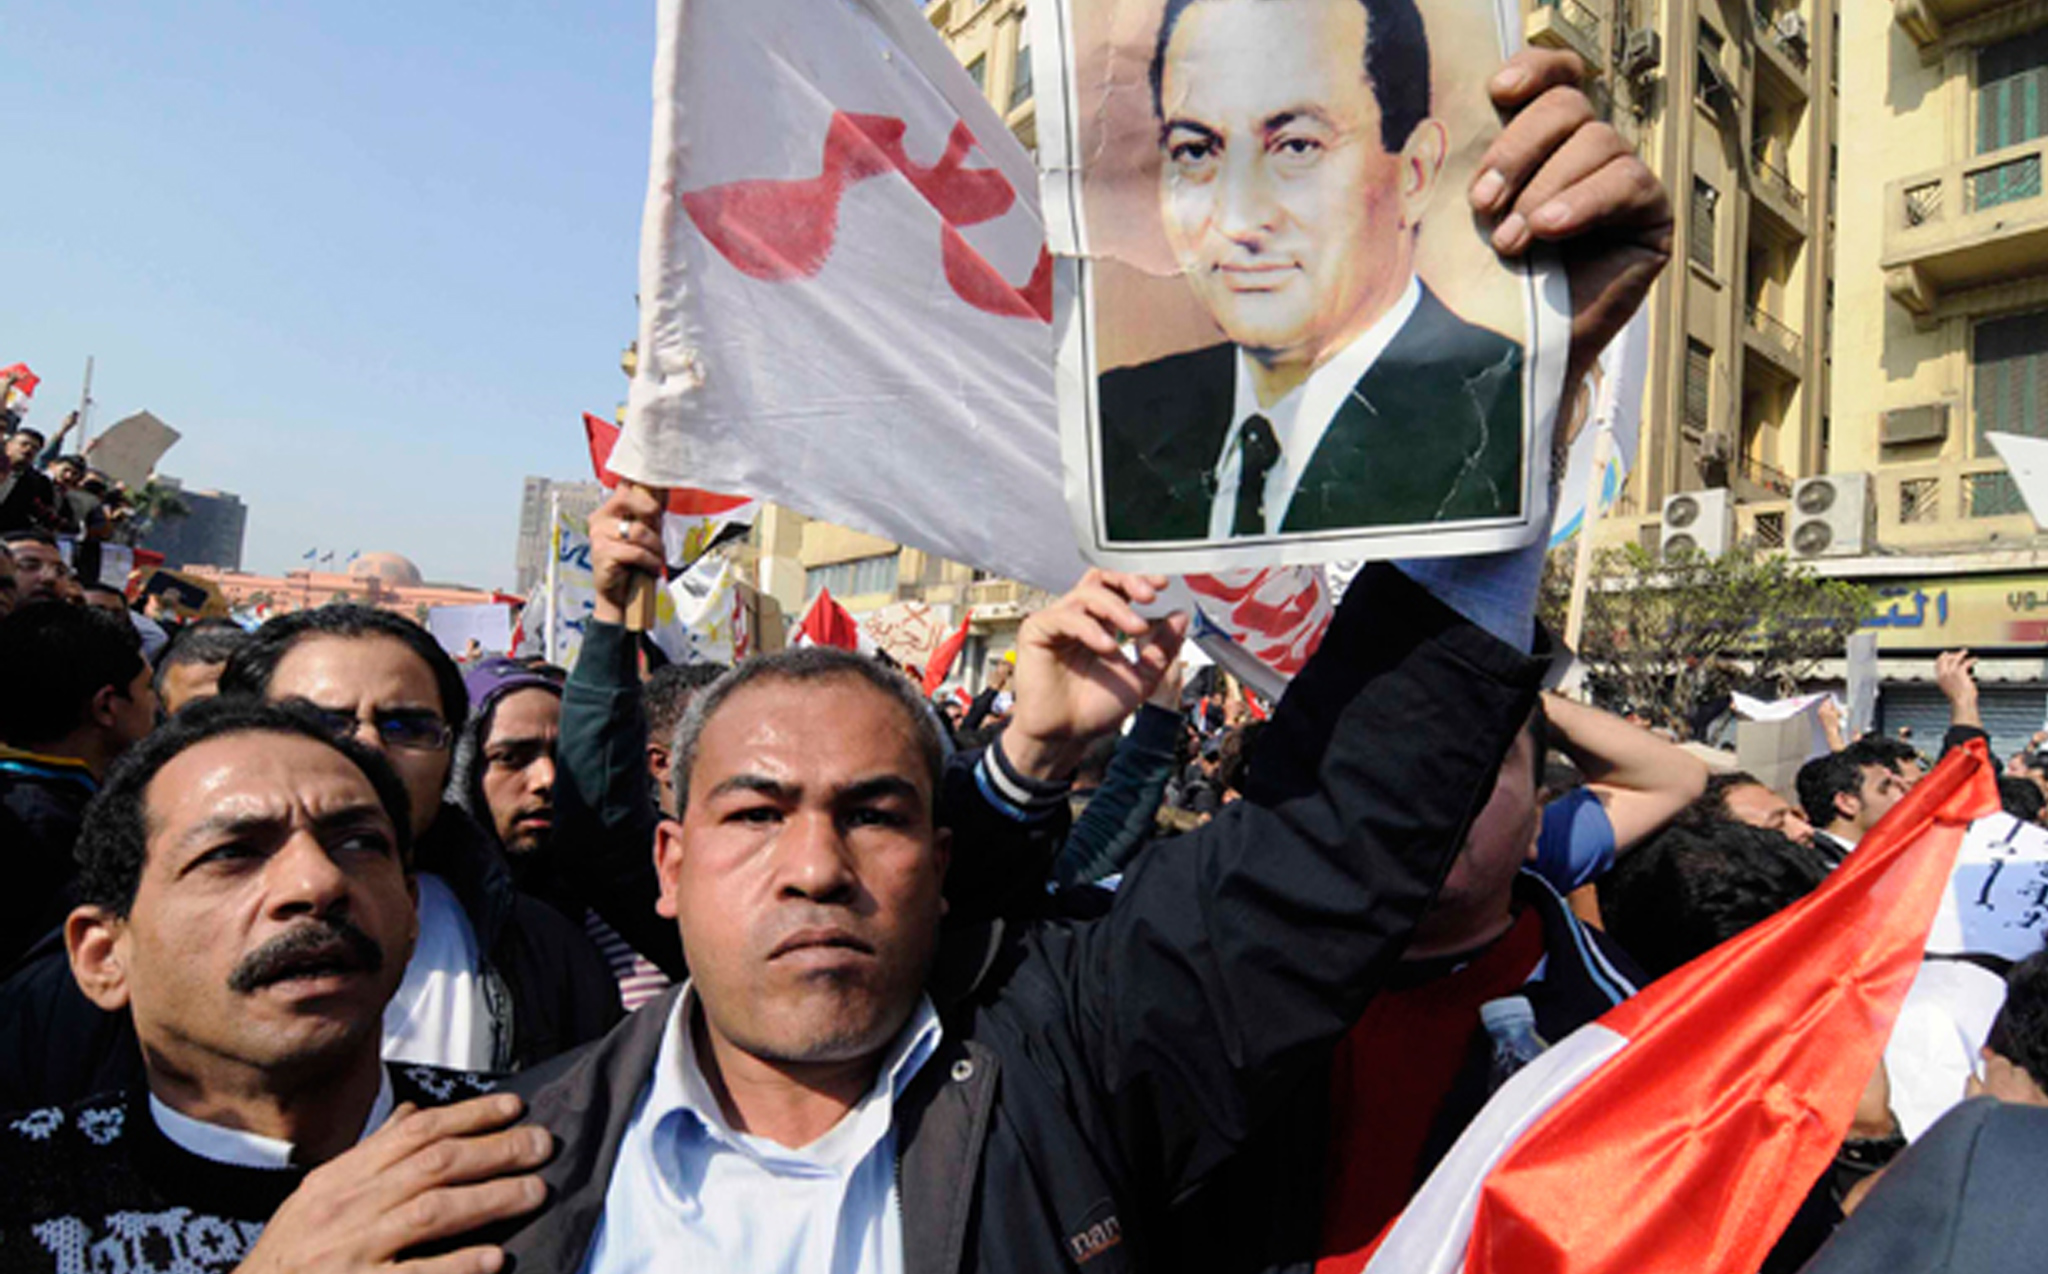 قرر أتباع حسني مبارك اقتحام ميدان التحرير لإخراج المتظاهرين منه.<br>
(الصورة لمهدي الشبل)